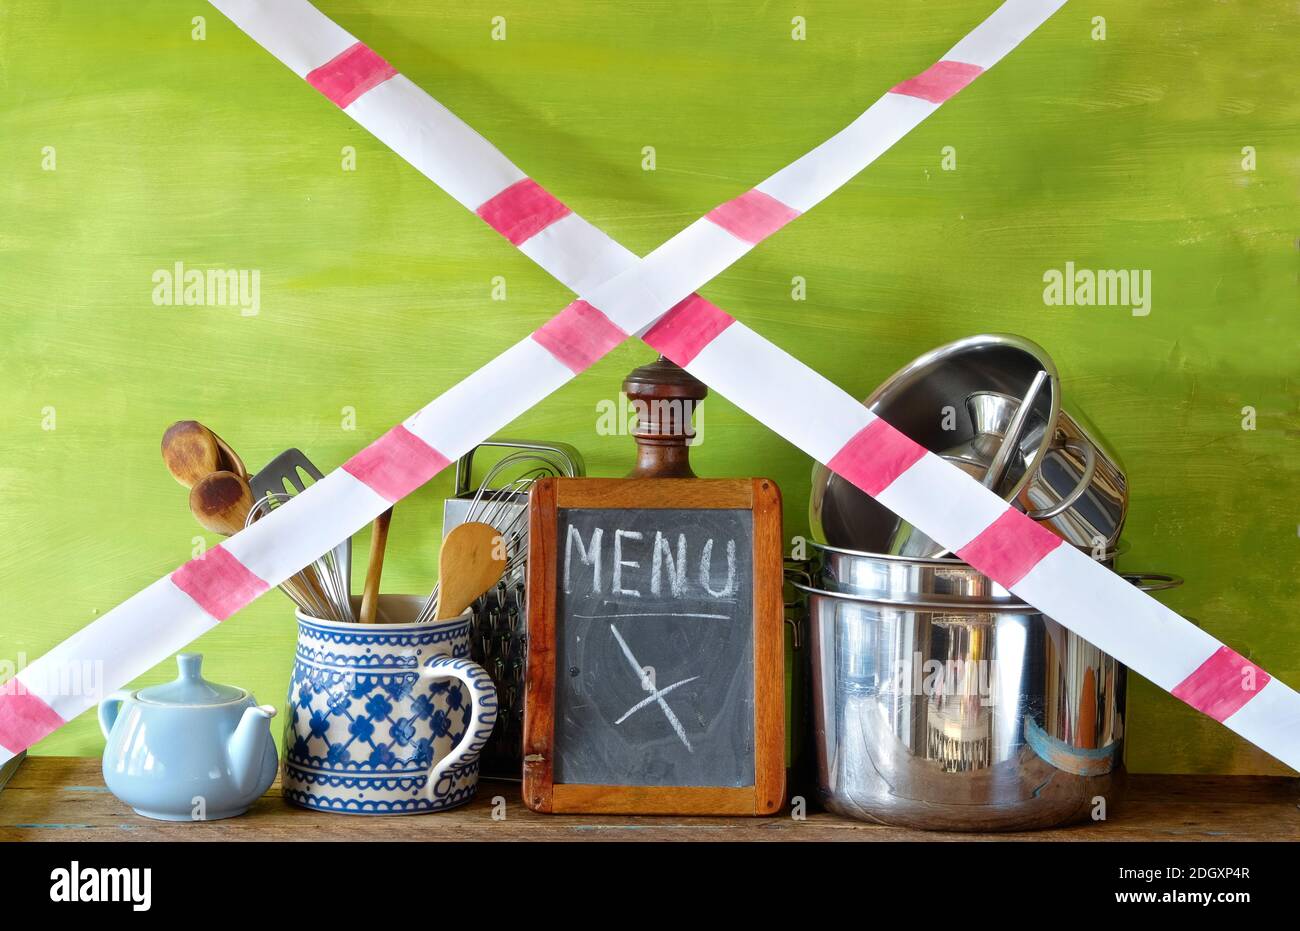 gastronomia corona lockdown, ristorante utensili da cucina con nastro di avvertimento, immagine simbolica Foto Stock